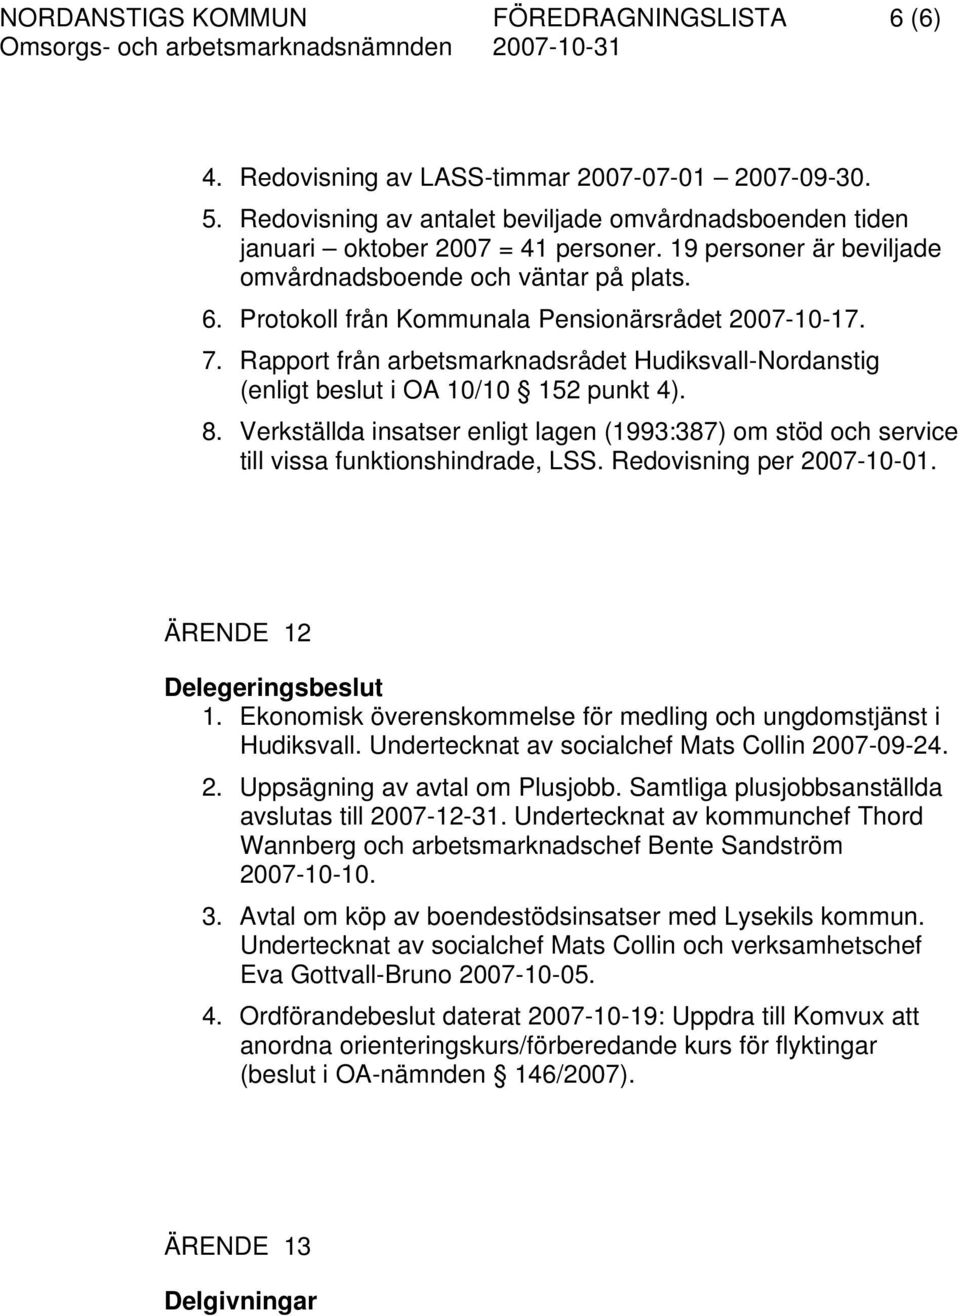 Rapport från arbetsmarknadsrådet Hudiksvall-Nordanstig (enligt beslut i OA 10/10 152 punkt 4). 8. Verkställda insatser enligt lagen (1993:387) om stöd och service till vissa funktionshindrade, LSS.